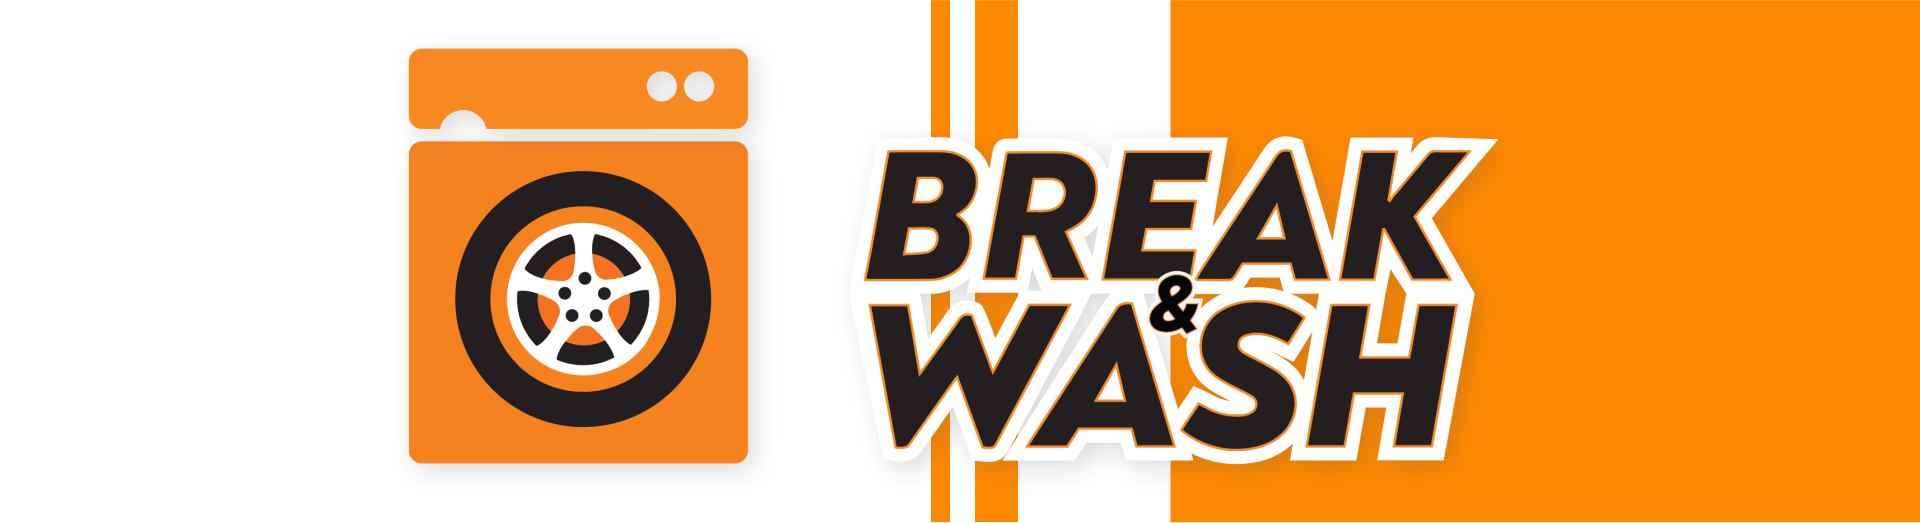 Banner with Break & Wash logo